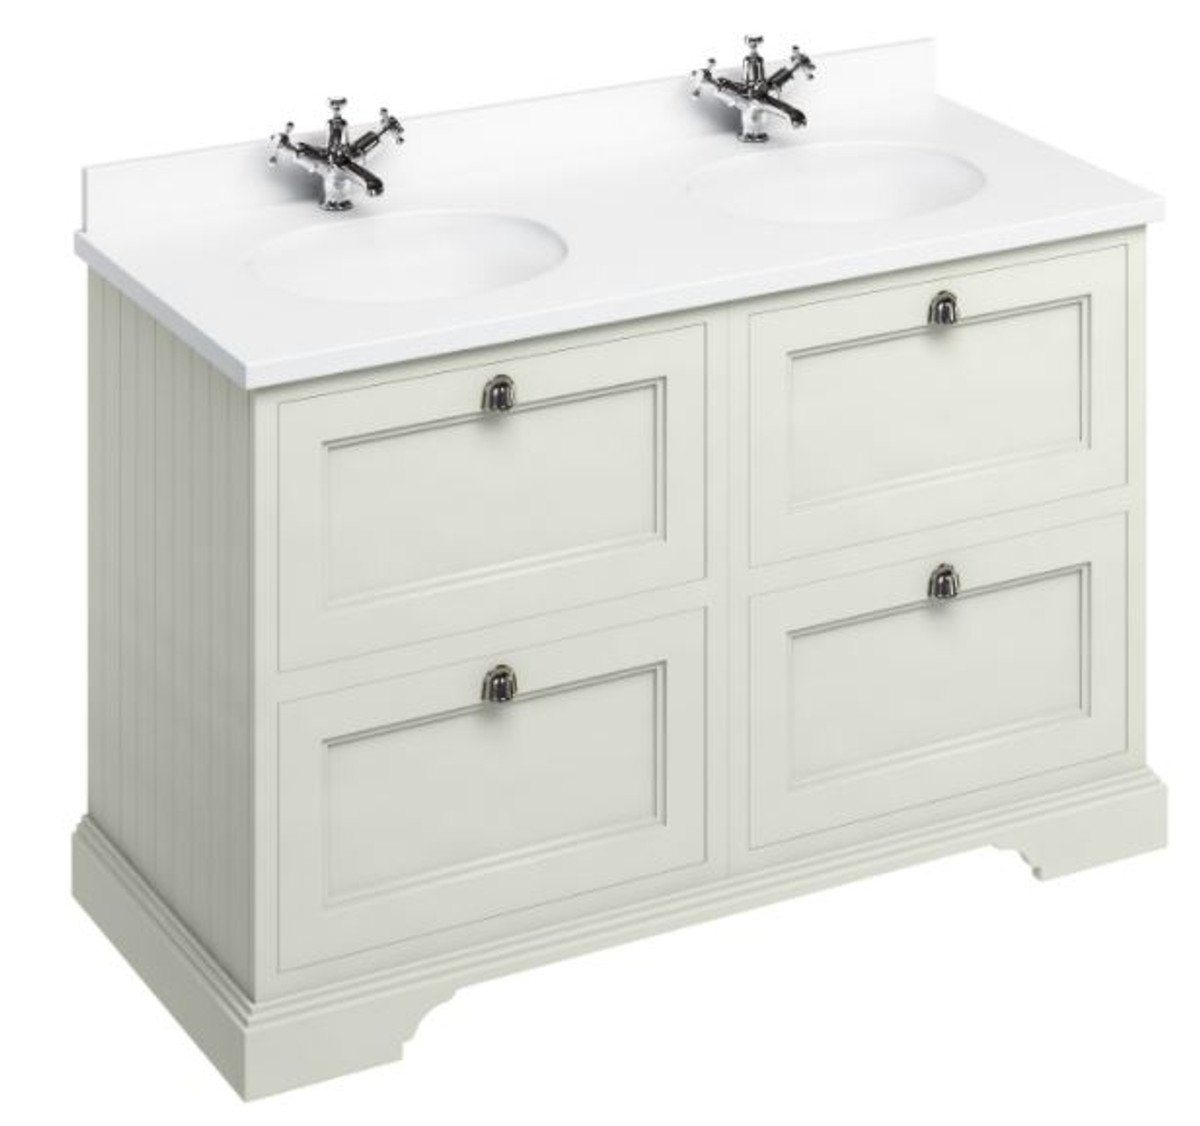 Casa Padrino Doppelwaschtisch Doppel Waschschrank mit Marmorplatte und 4 Schubladen - Luxus Waschtisch von Casa Padrino